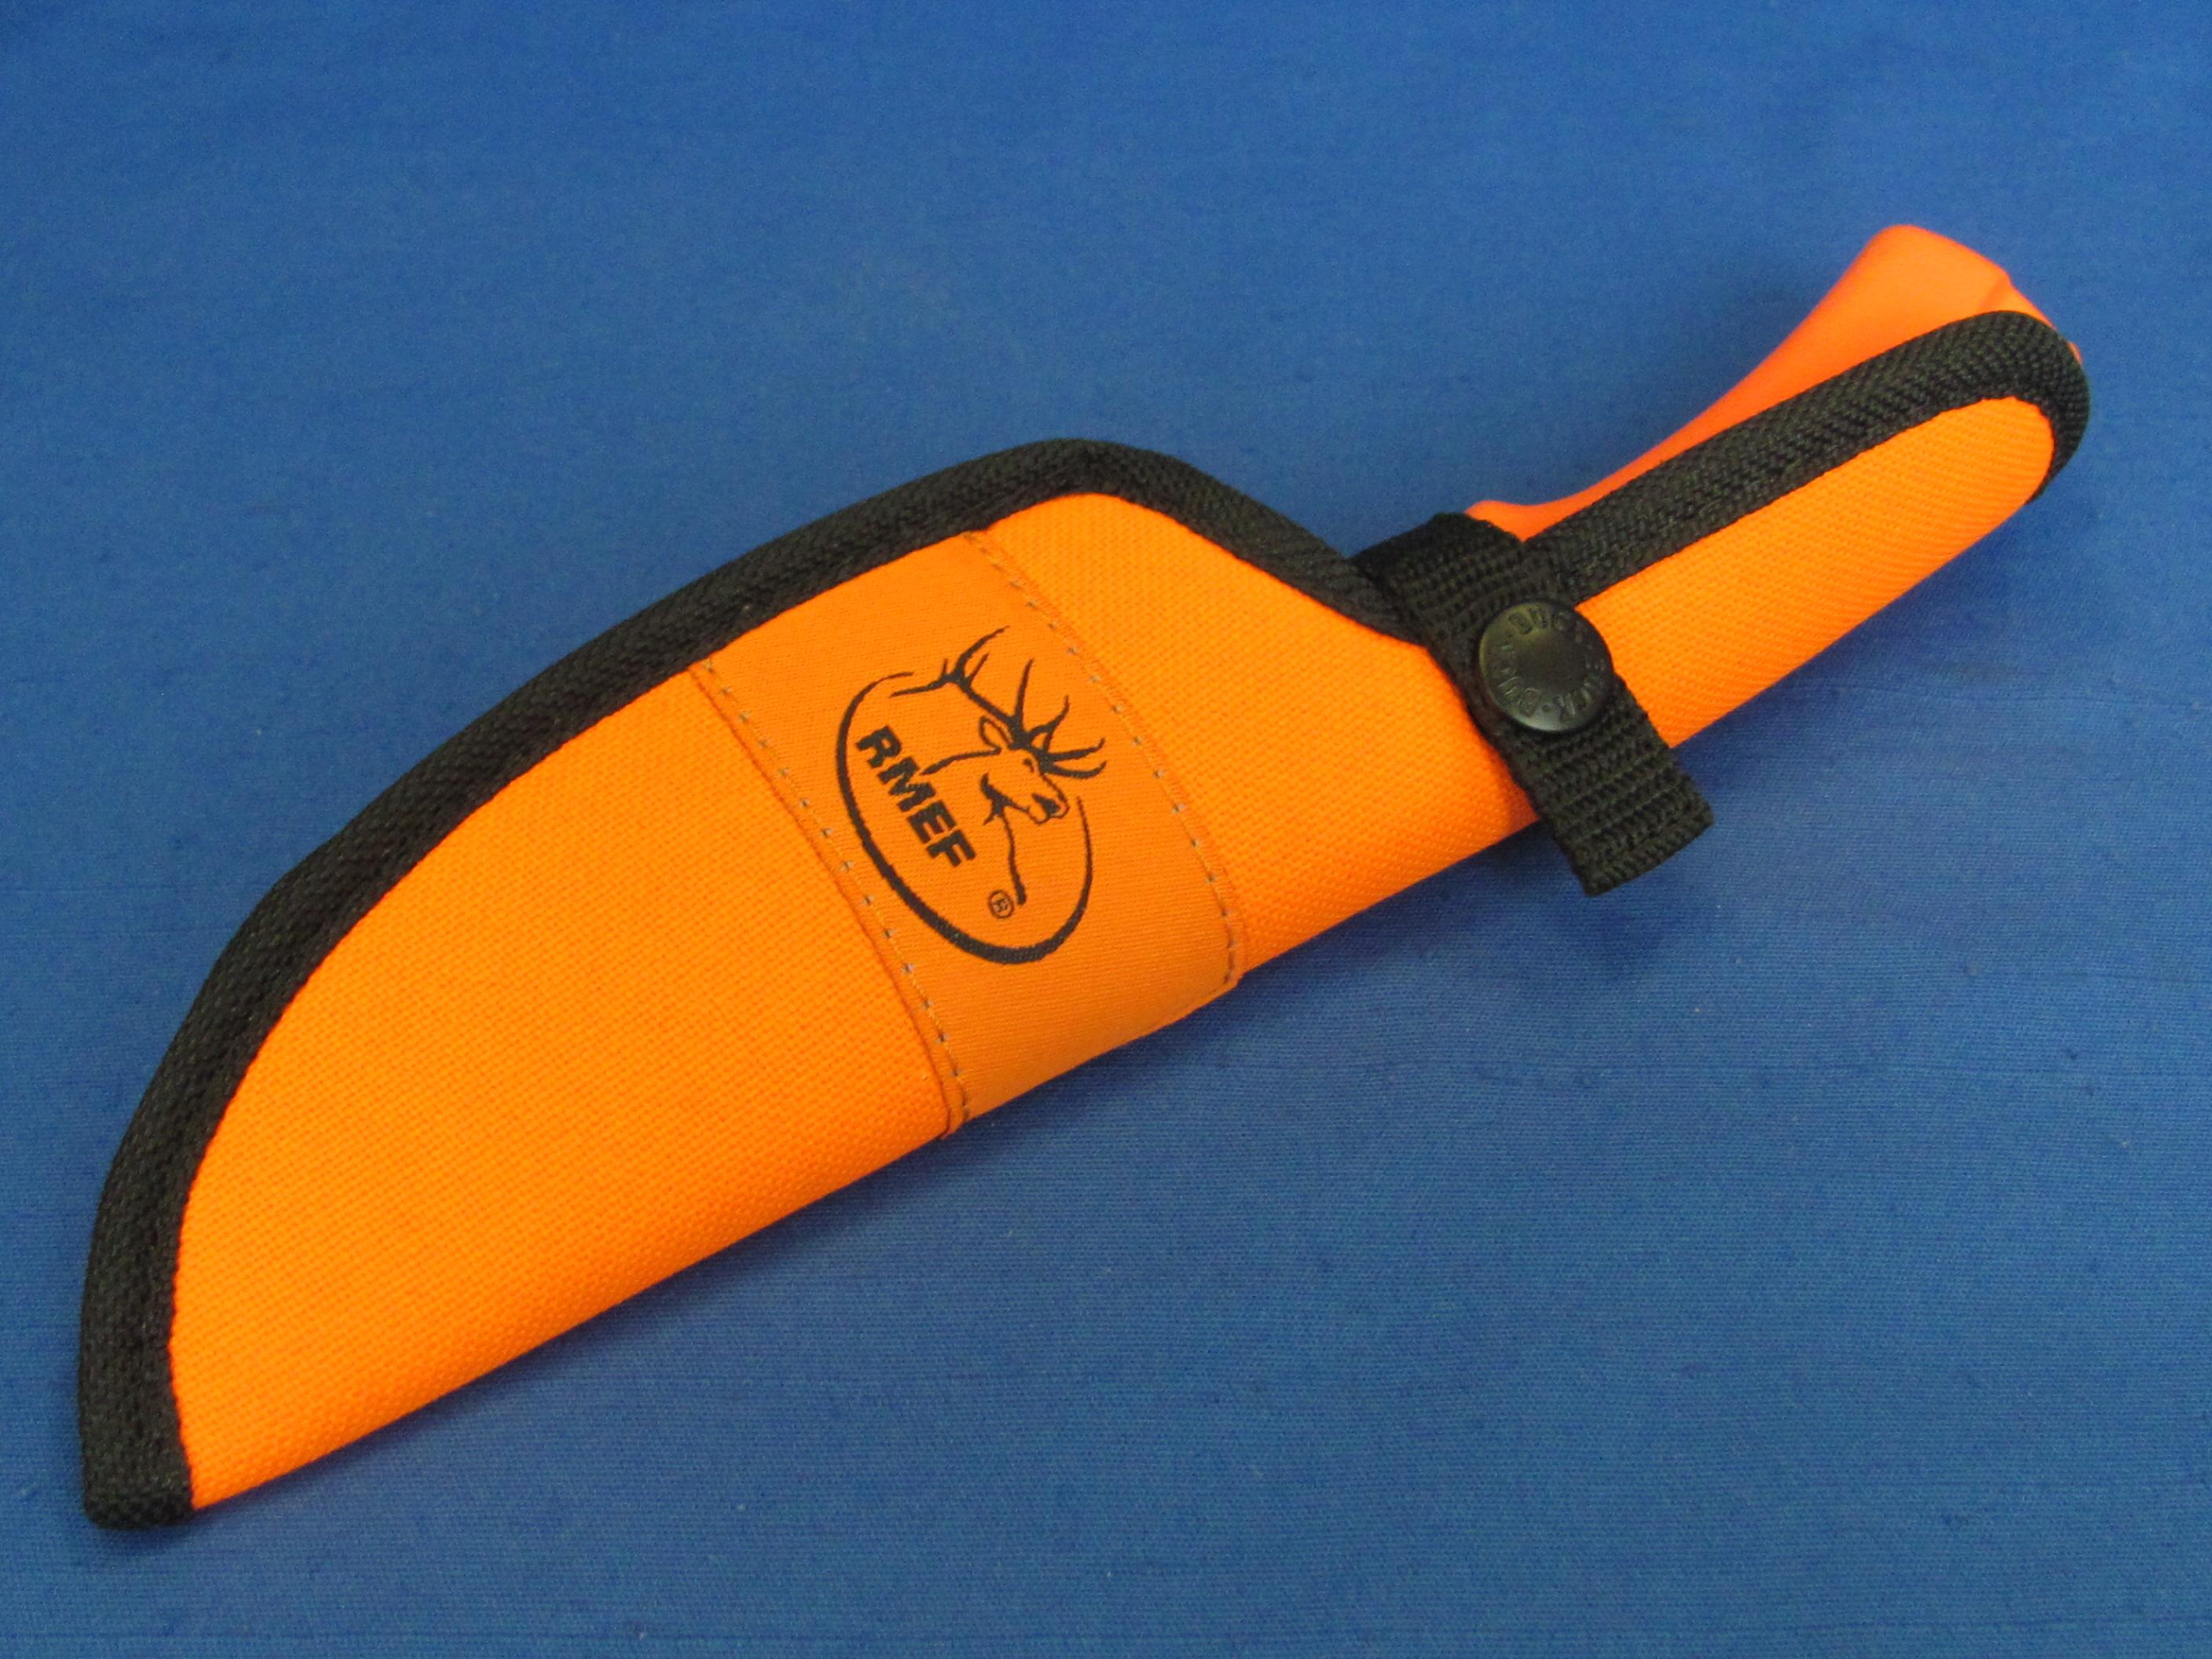 Buck Knife REMF No. 679 – In Sheath – Blaze Orange – 8 1/2” long